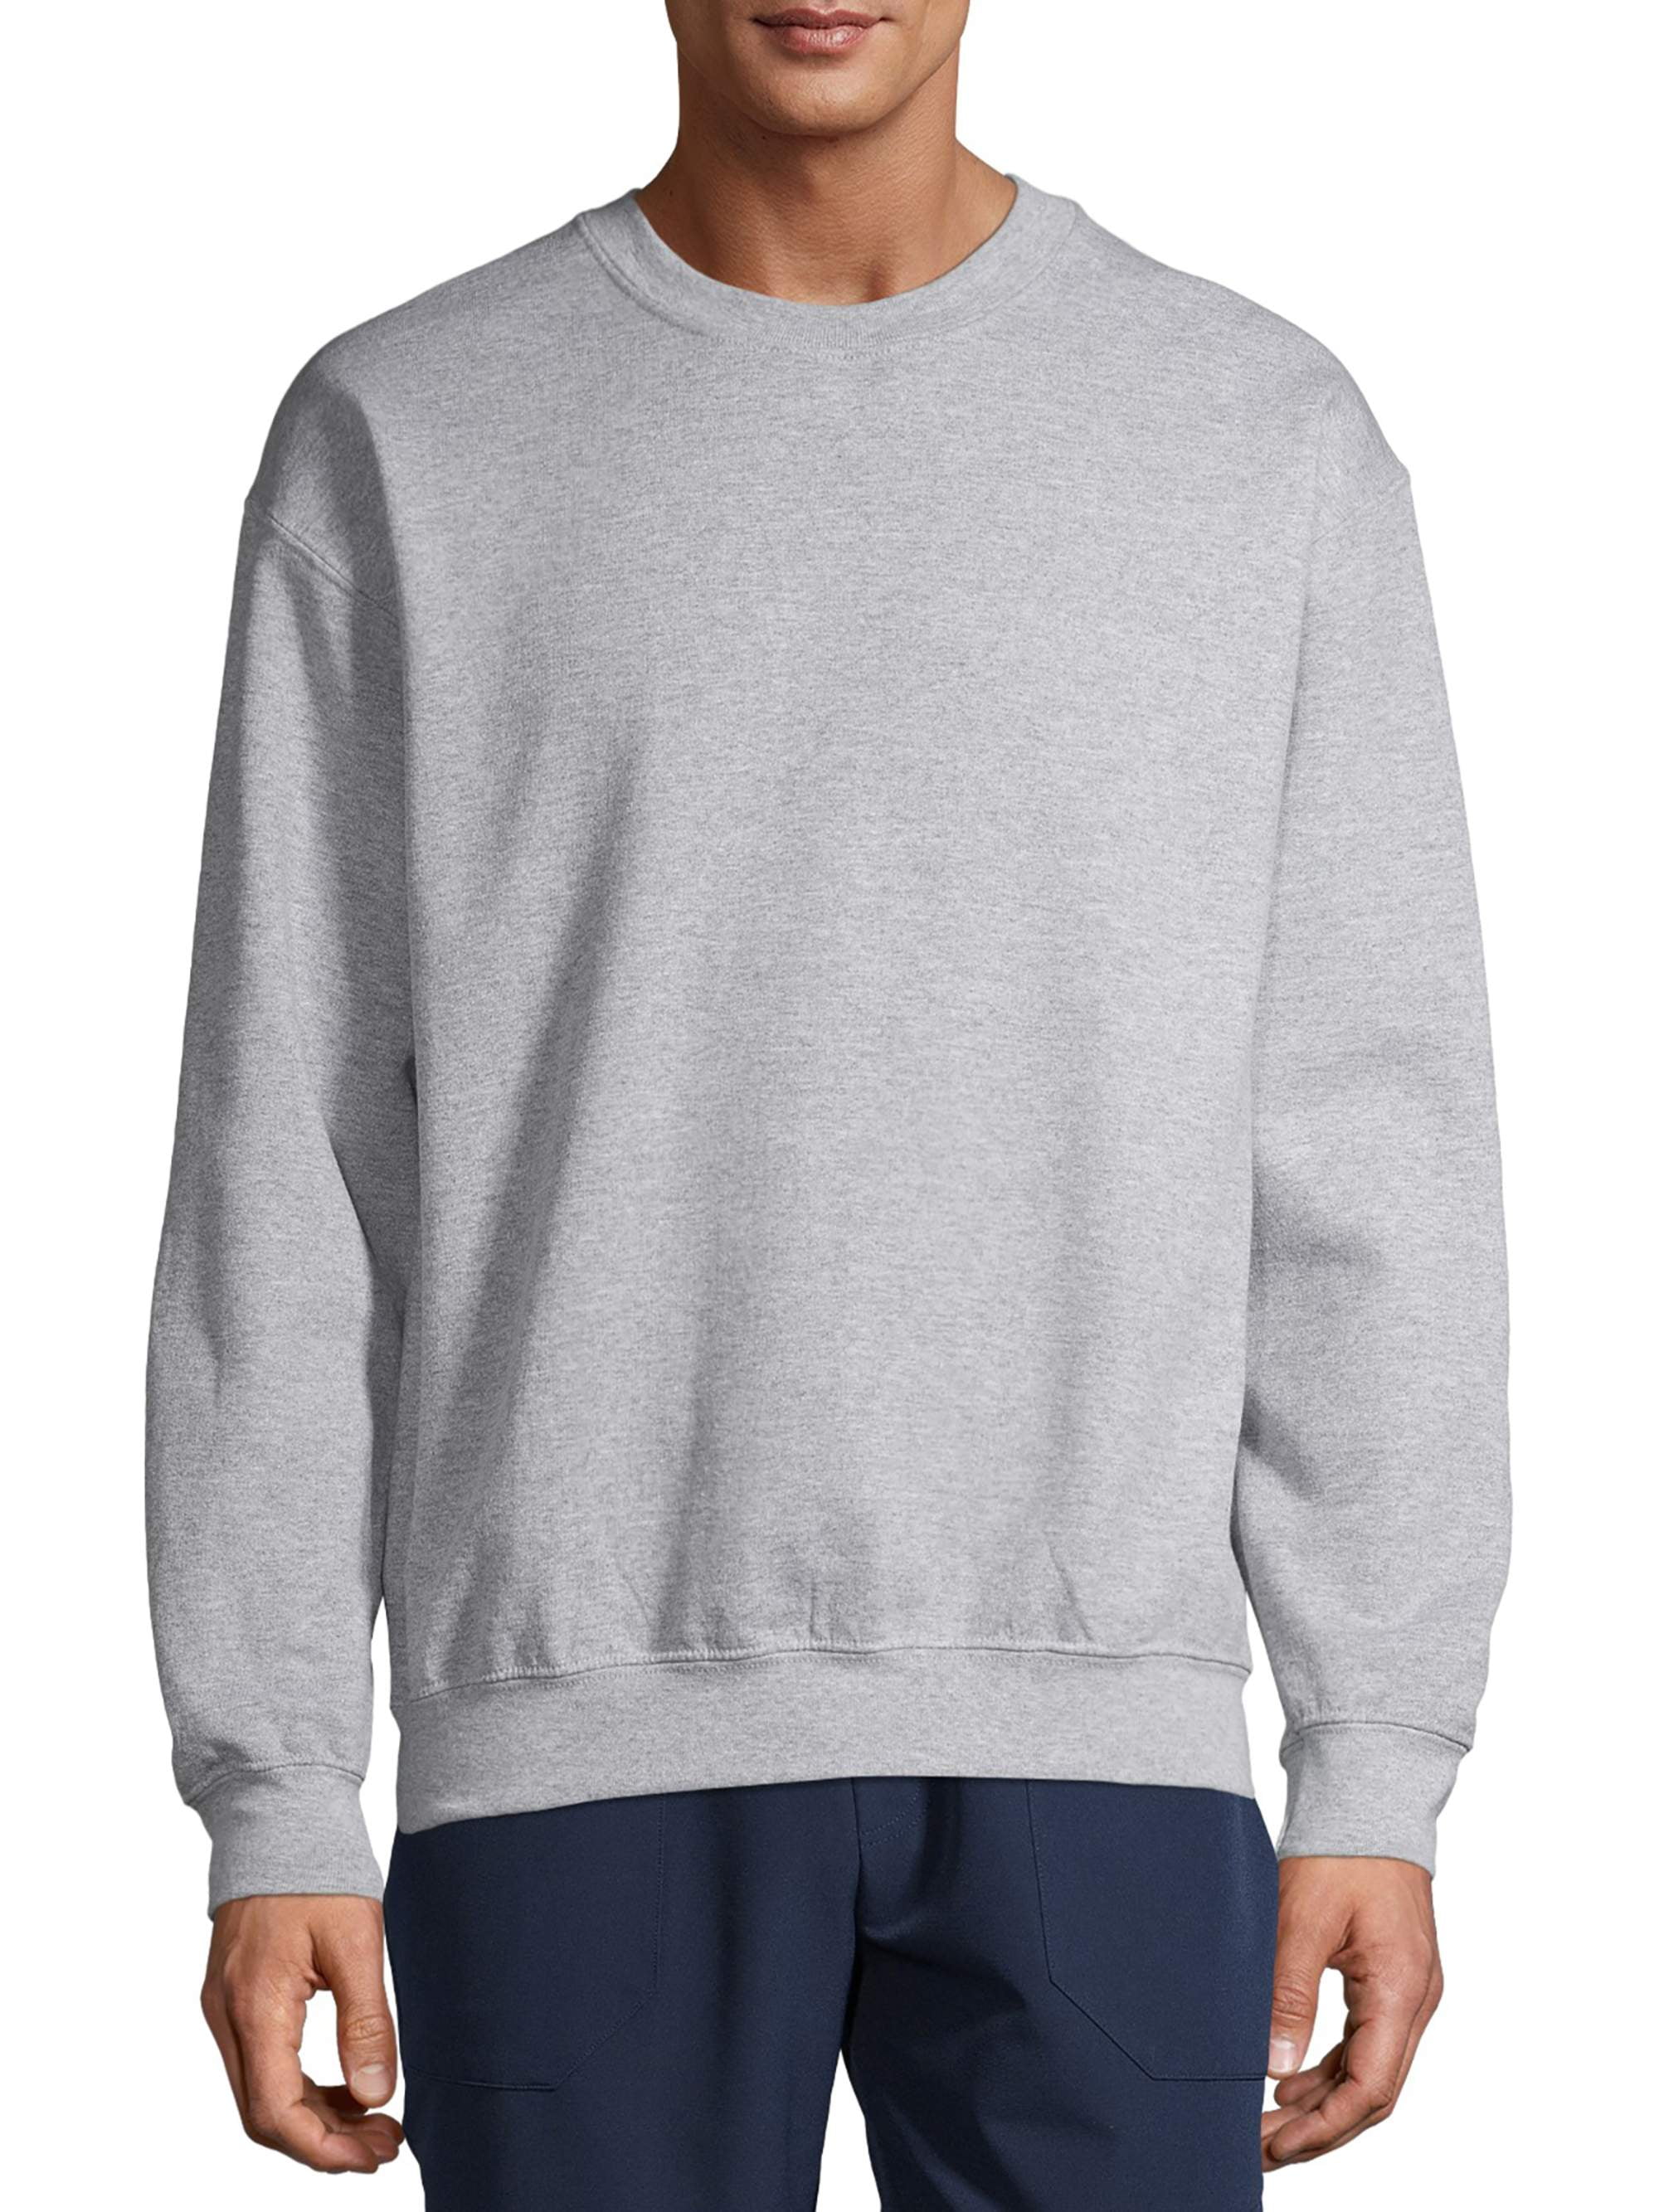 Gildan Men's Fleece Crewneck Sweatshirt - Walmart.com